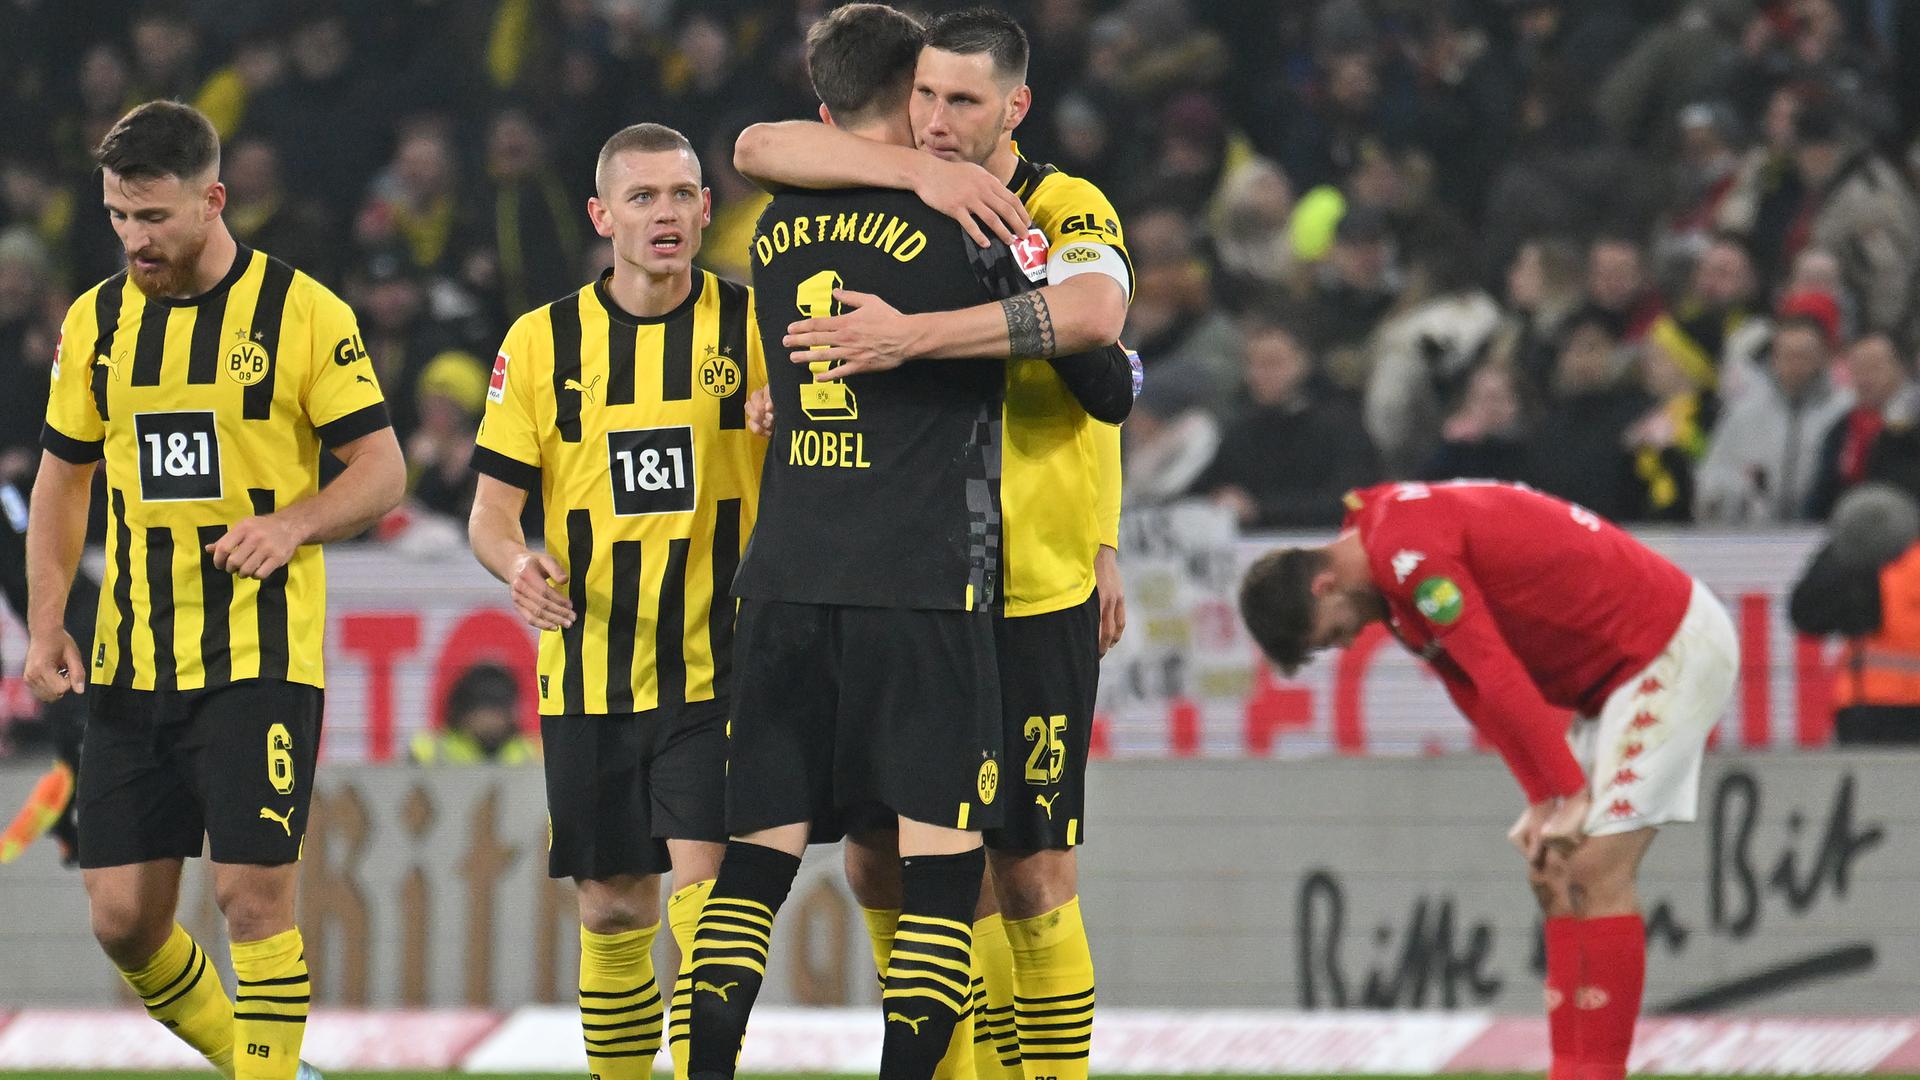 Spieler von Borussia Dortmund feiern nach dem Abpfiff ihren Sieg und umarmen sich. Im Hintergrund ist ein Mainzer Spieler zu sehen, der sich mit frustriert herunterhängendem Kopf auf seine Knie stützt.